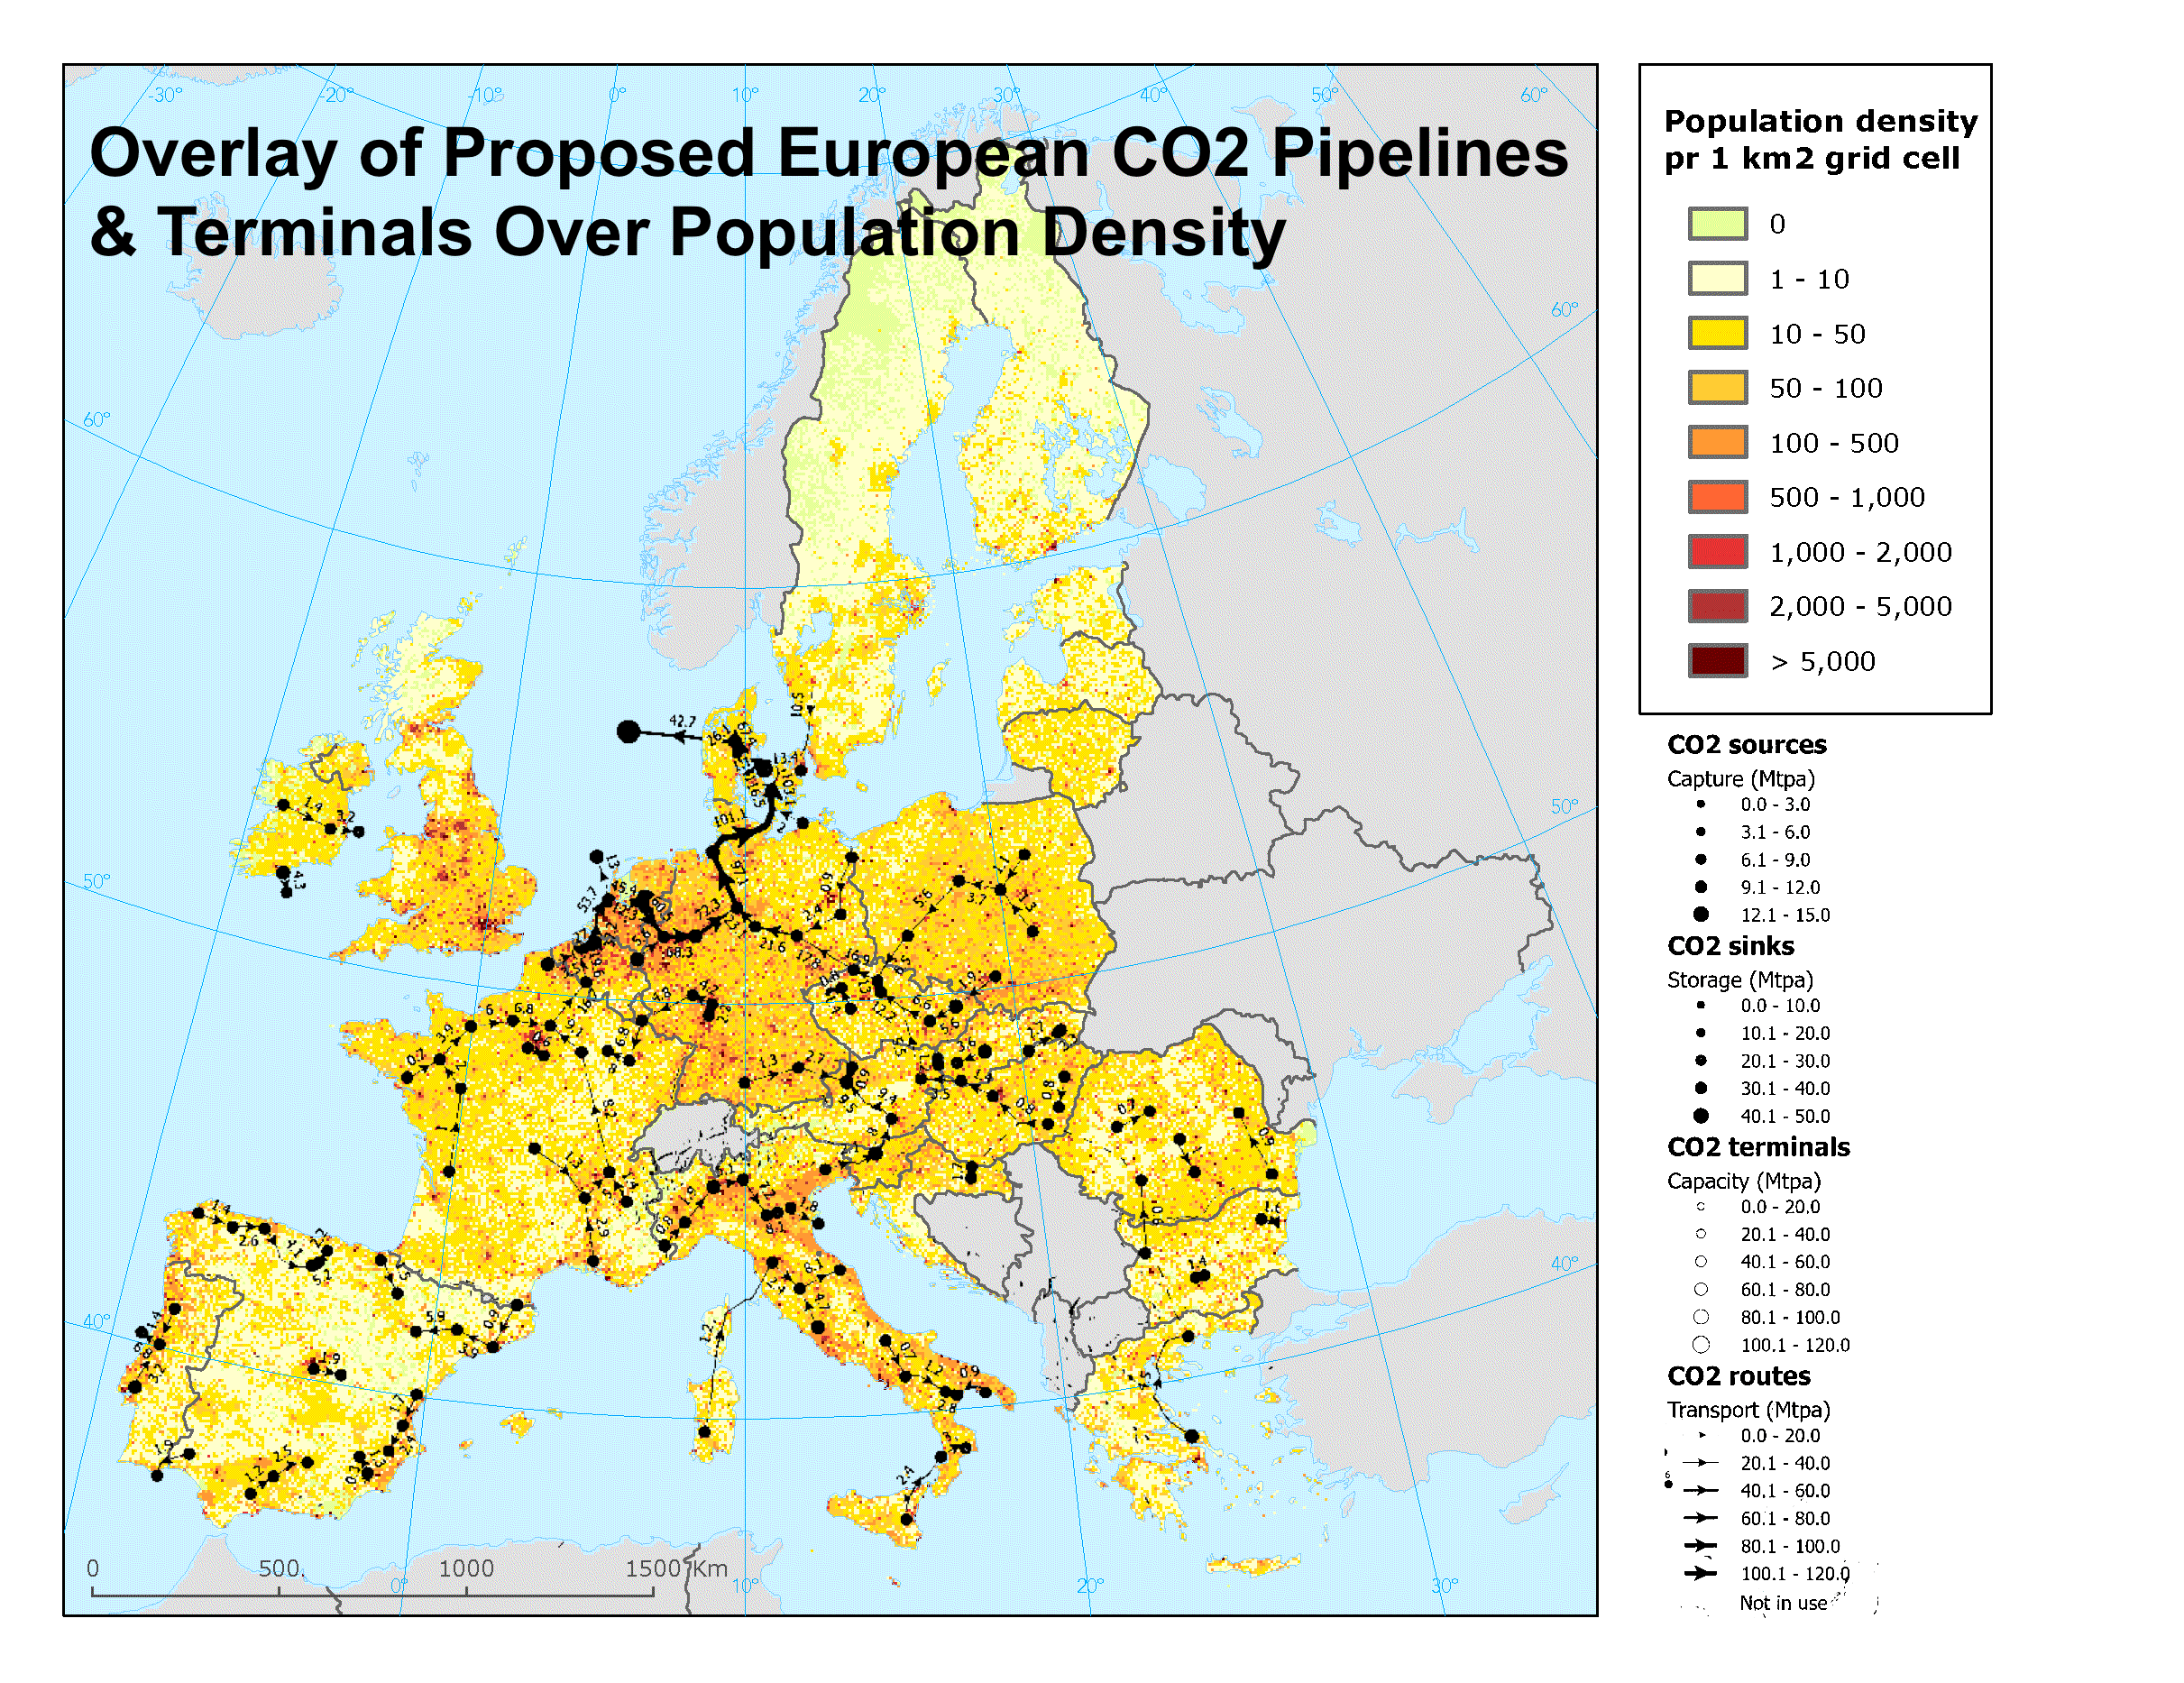 Sovrapposizione delle proposte di gasdotti e terminali di CO2 europei su una mappa della densità di popolazione europea per autore